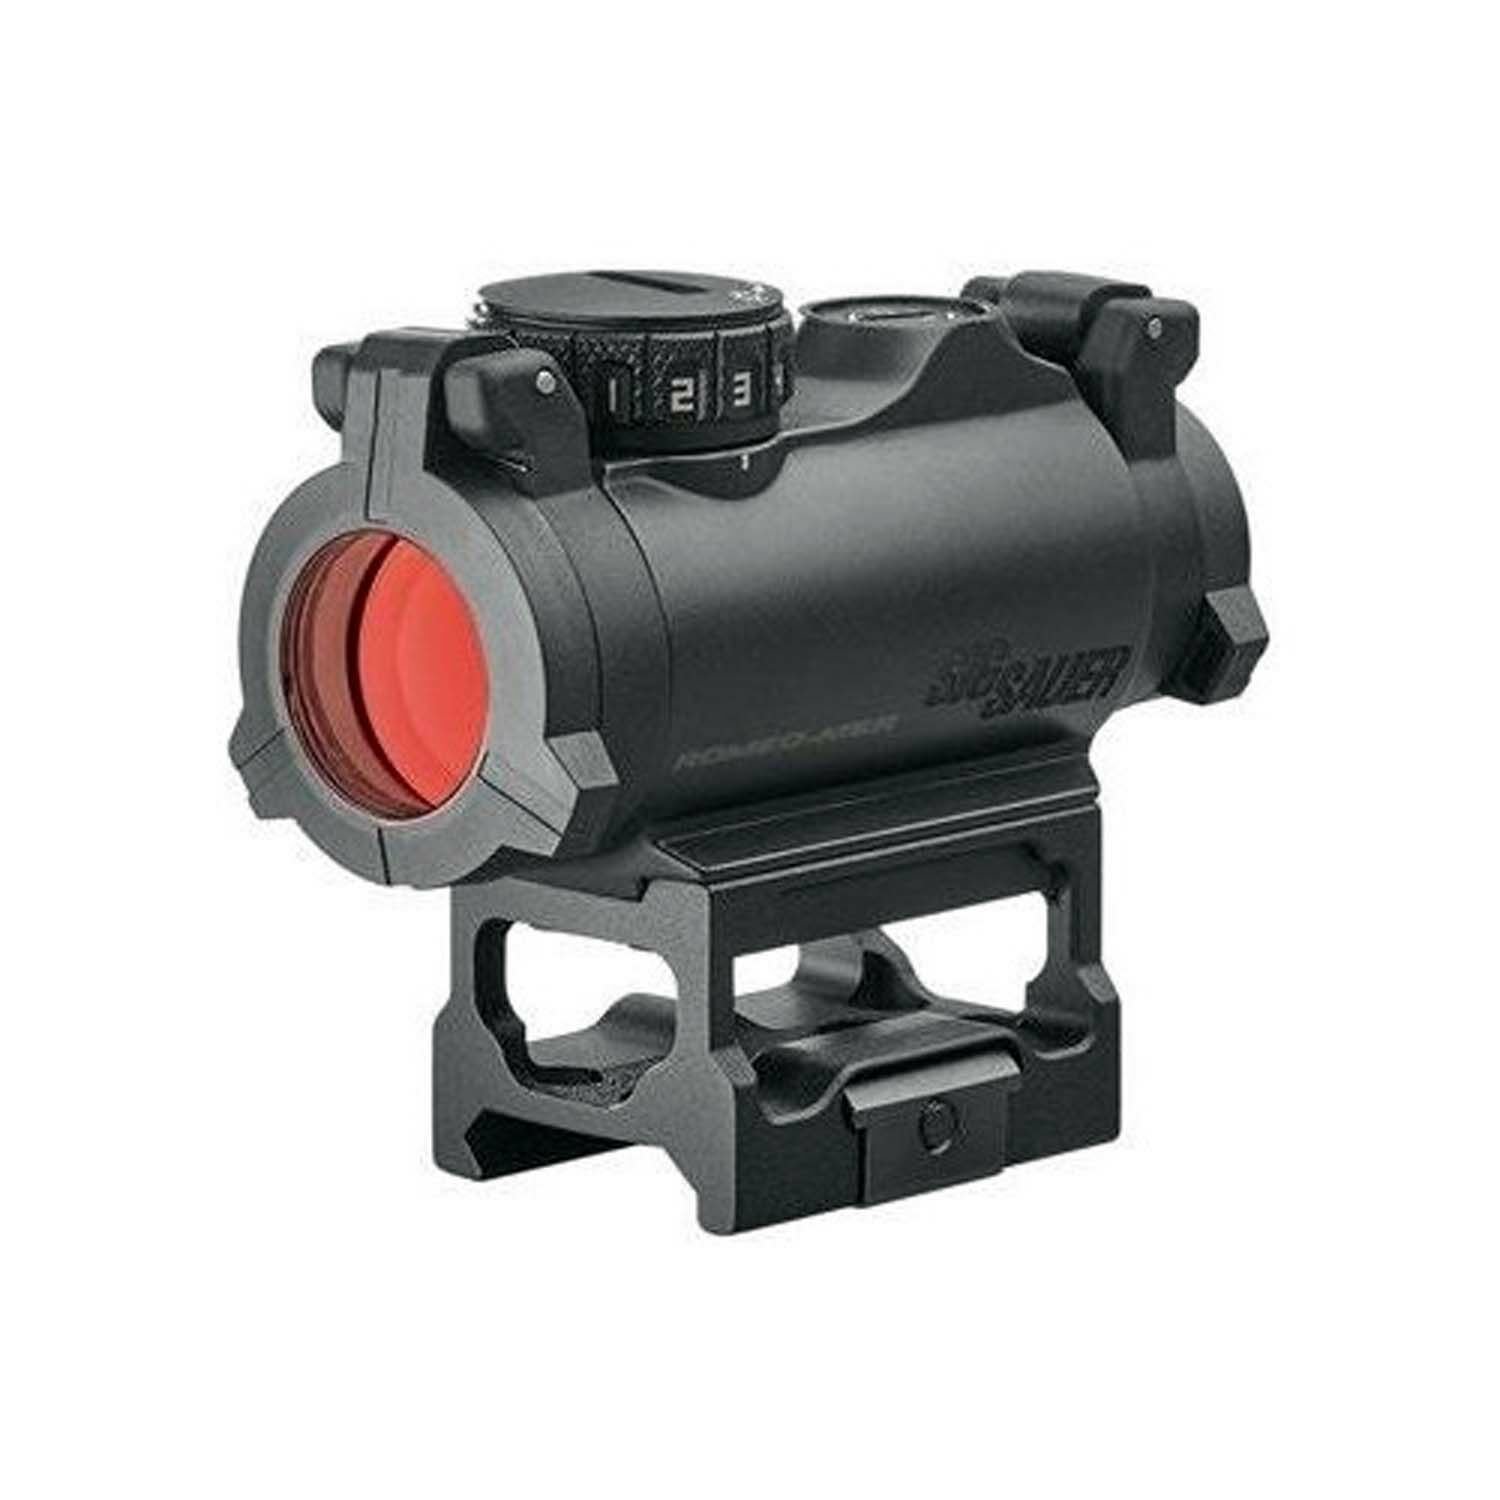 Sig Sauer ROMEO-MSR Compact 1x20 mm Weaver Hedef Noktalayıcı Red Dot Sight